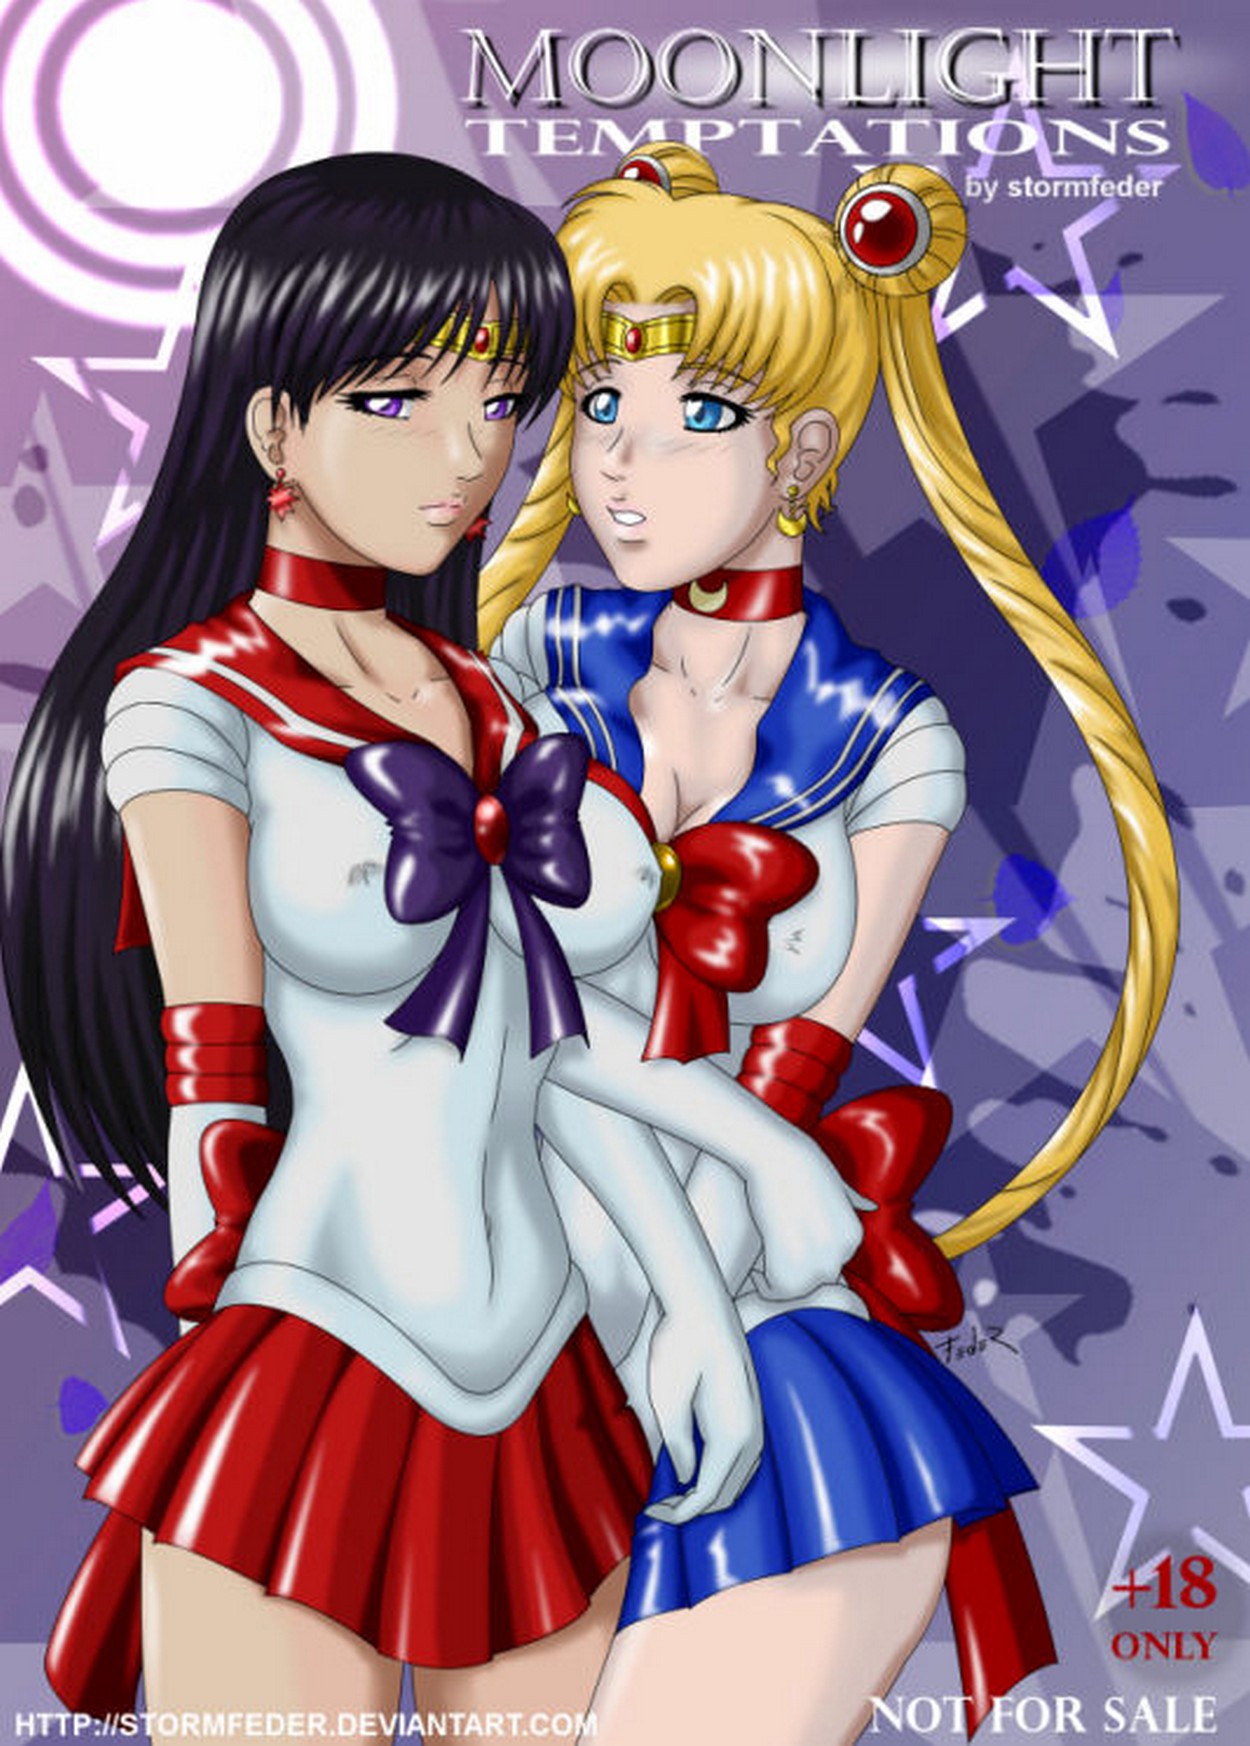 sailor moon xxx Serena y Rei siendo violadas